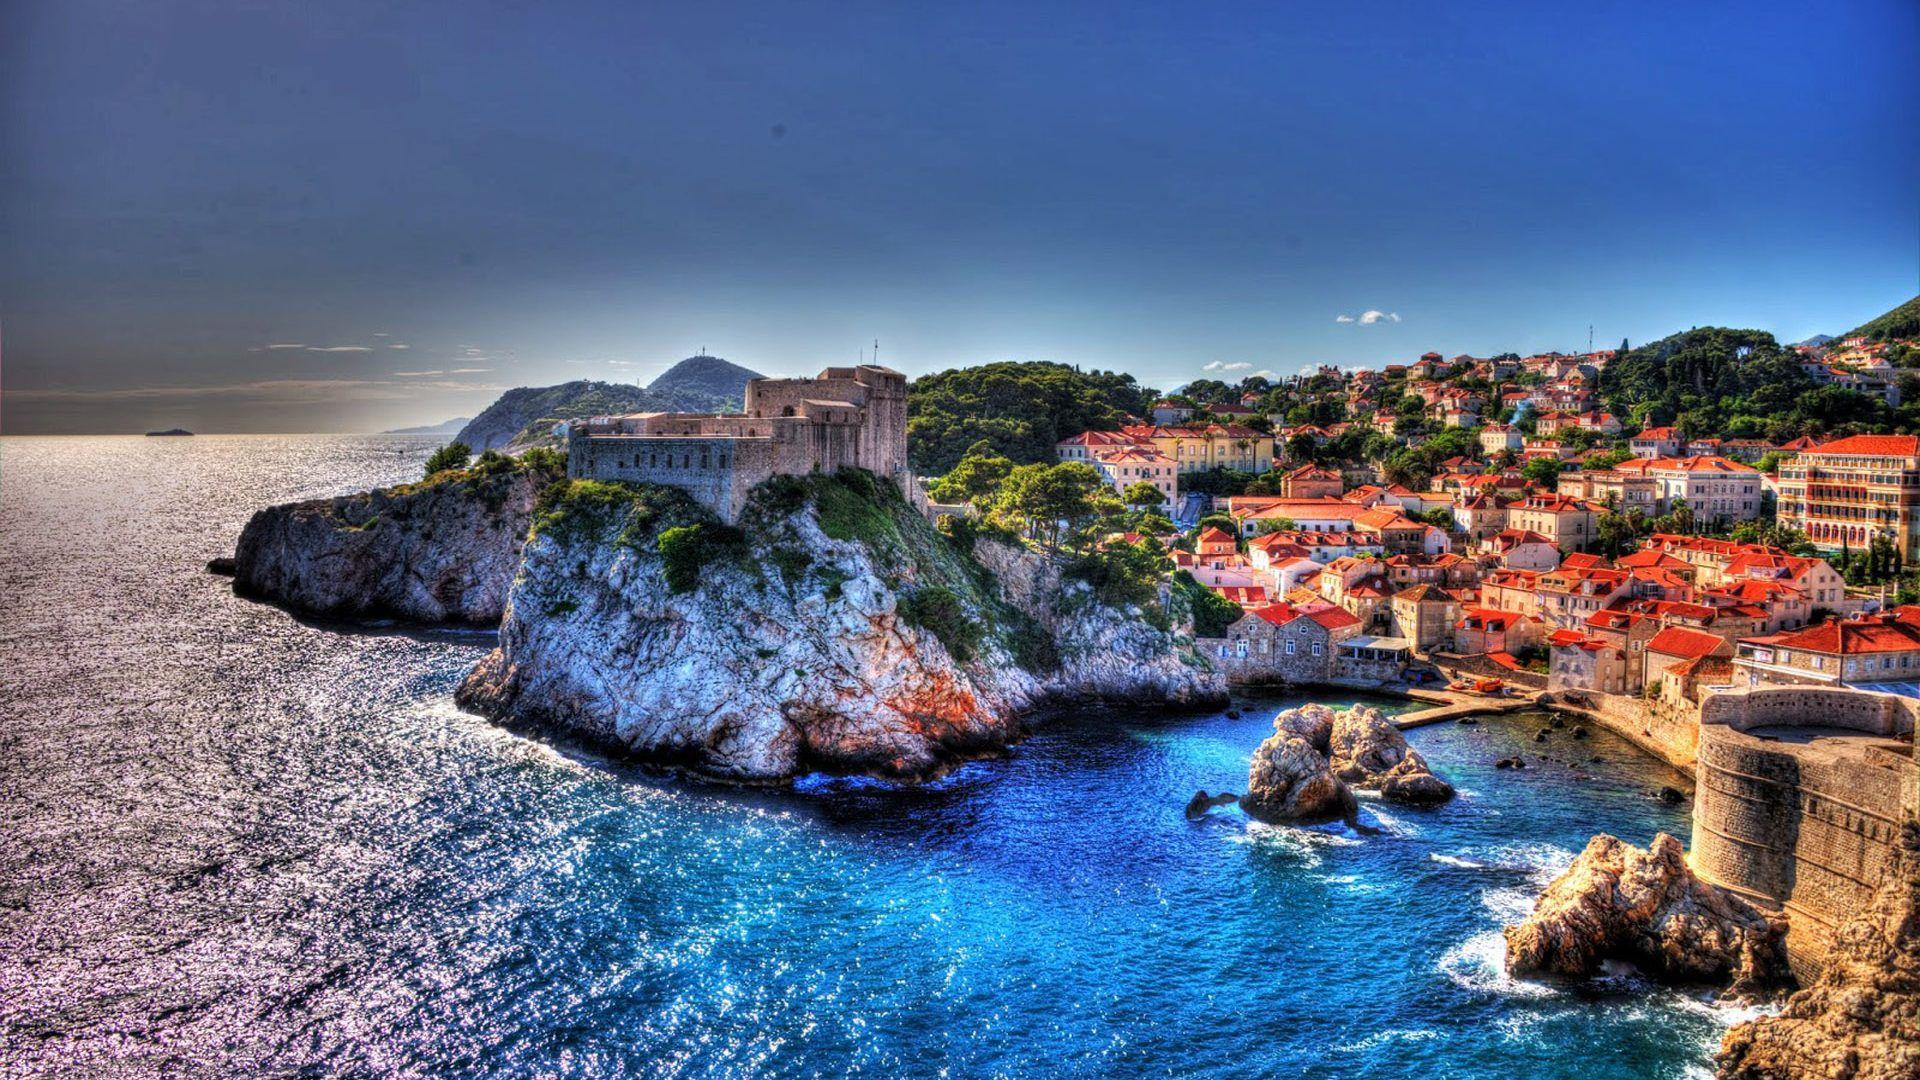 Adriatic Dubrovnik Croatia Ancient City Walls And Historical